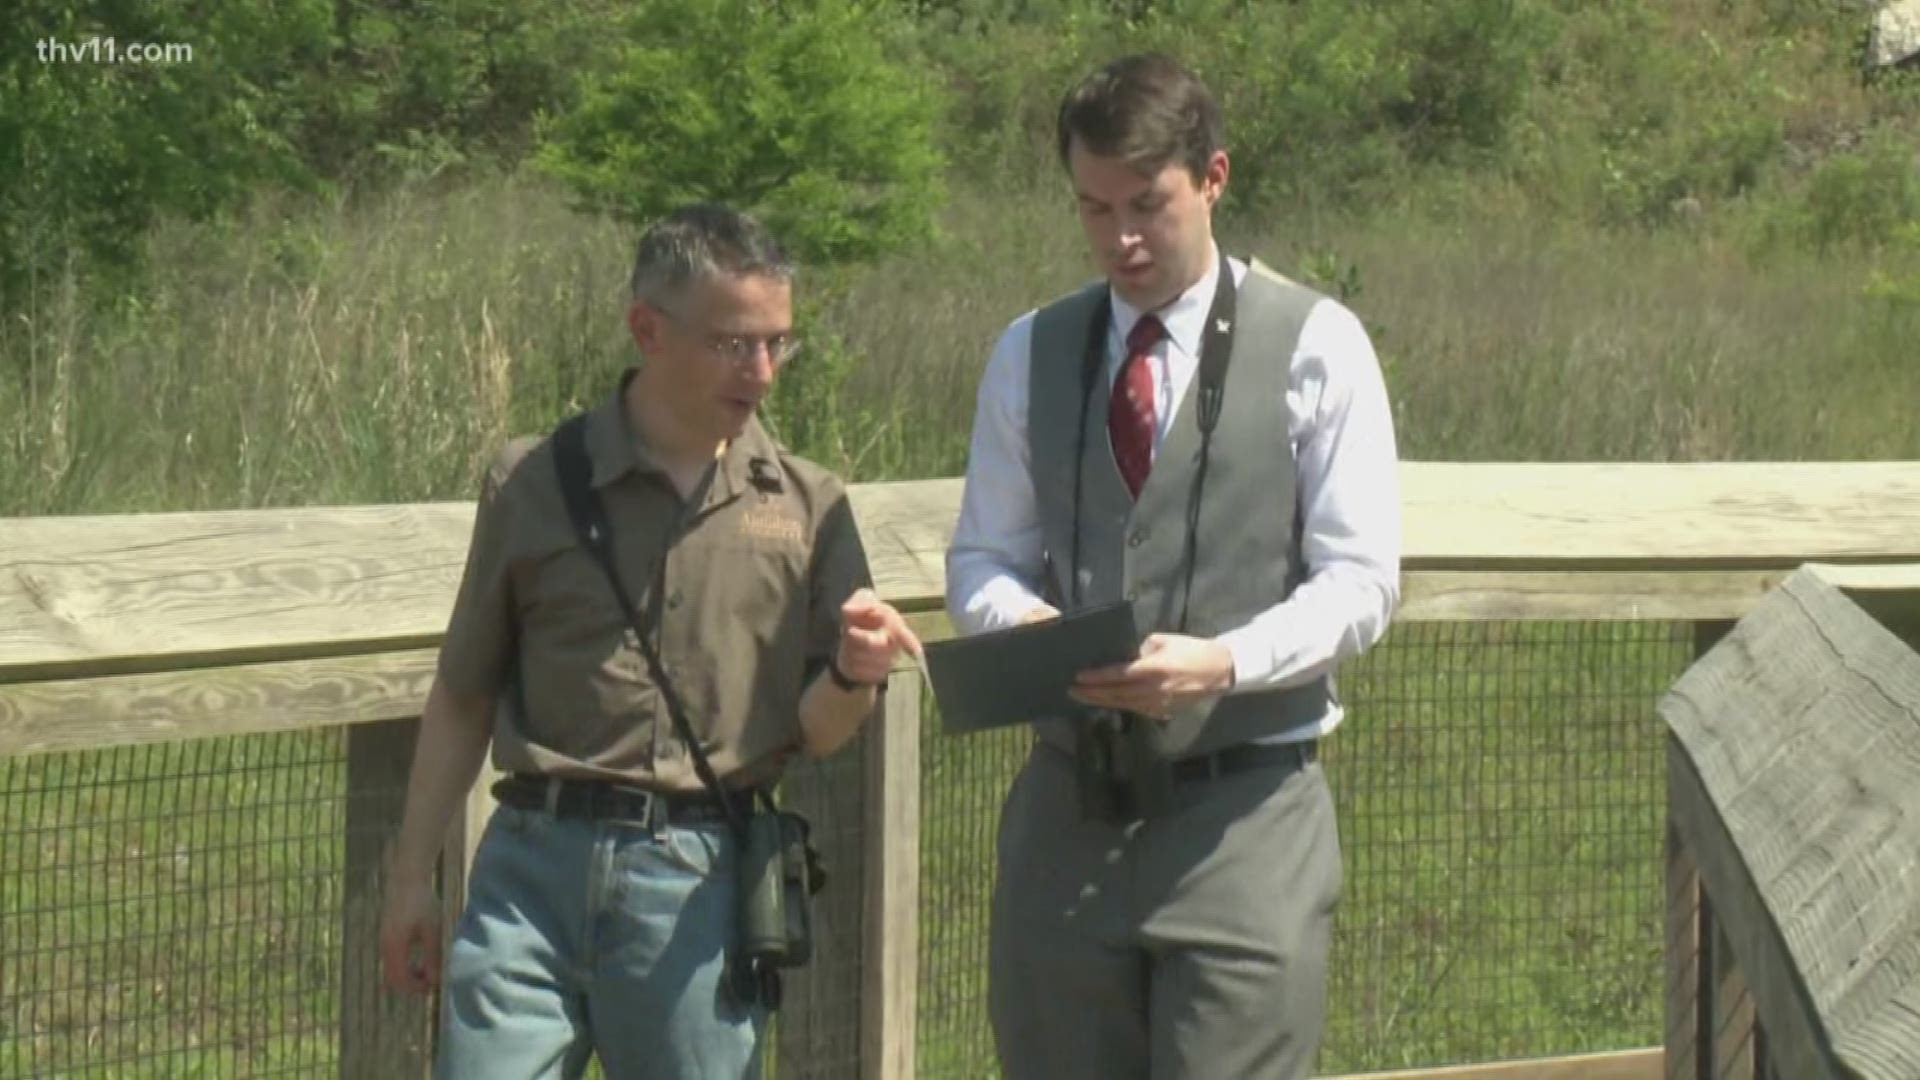 Audubon Arkansas to host bird scavenger hunt this weekend